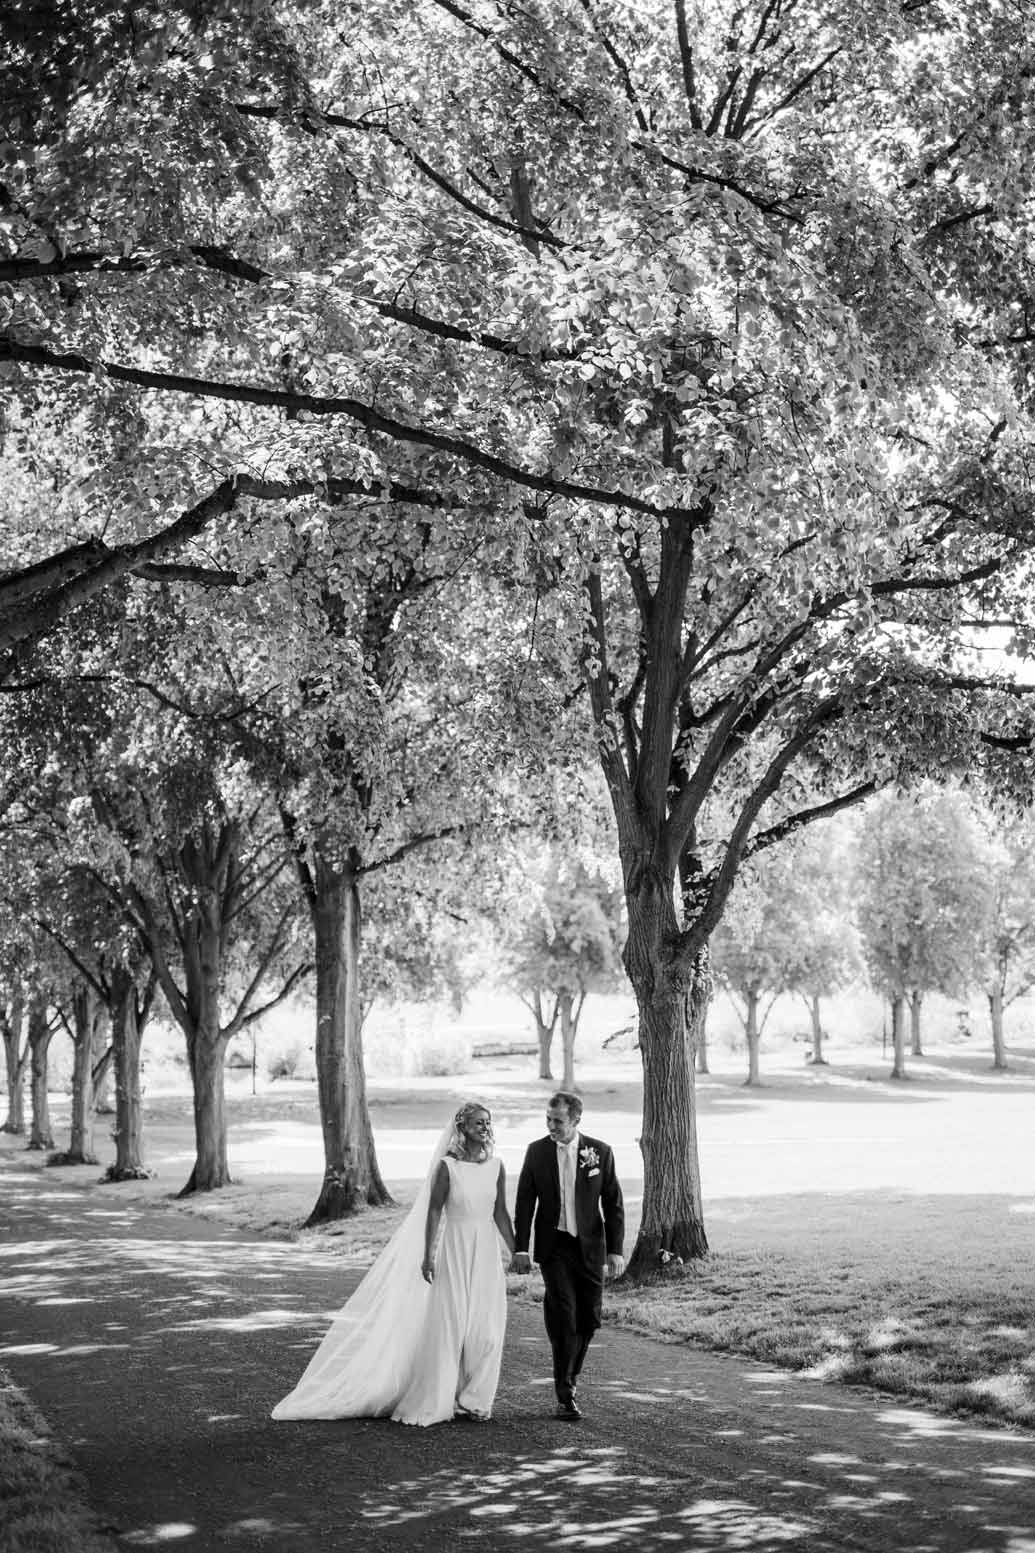 reportage wedding photography of couple walking